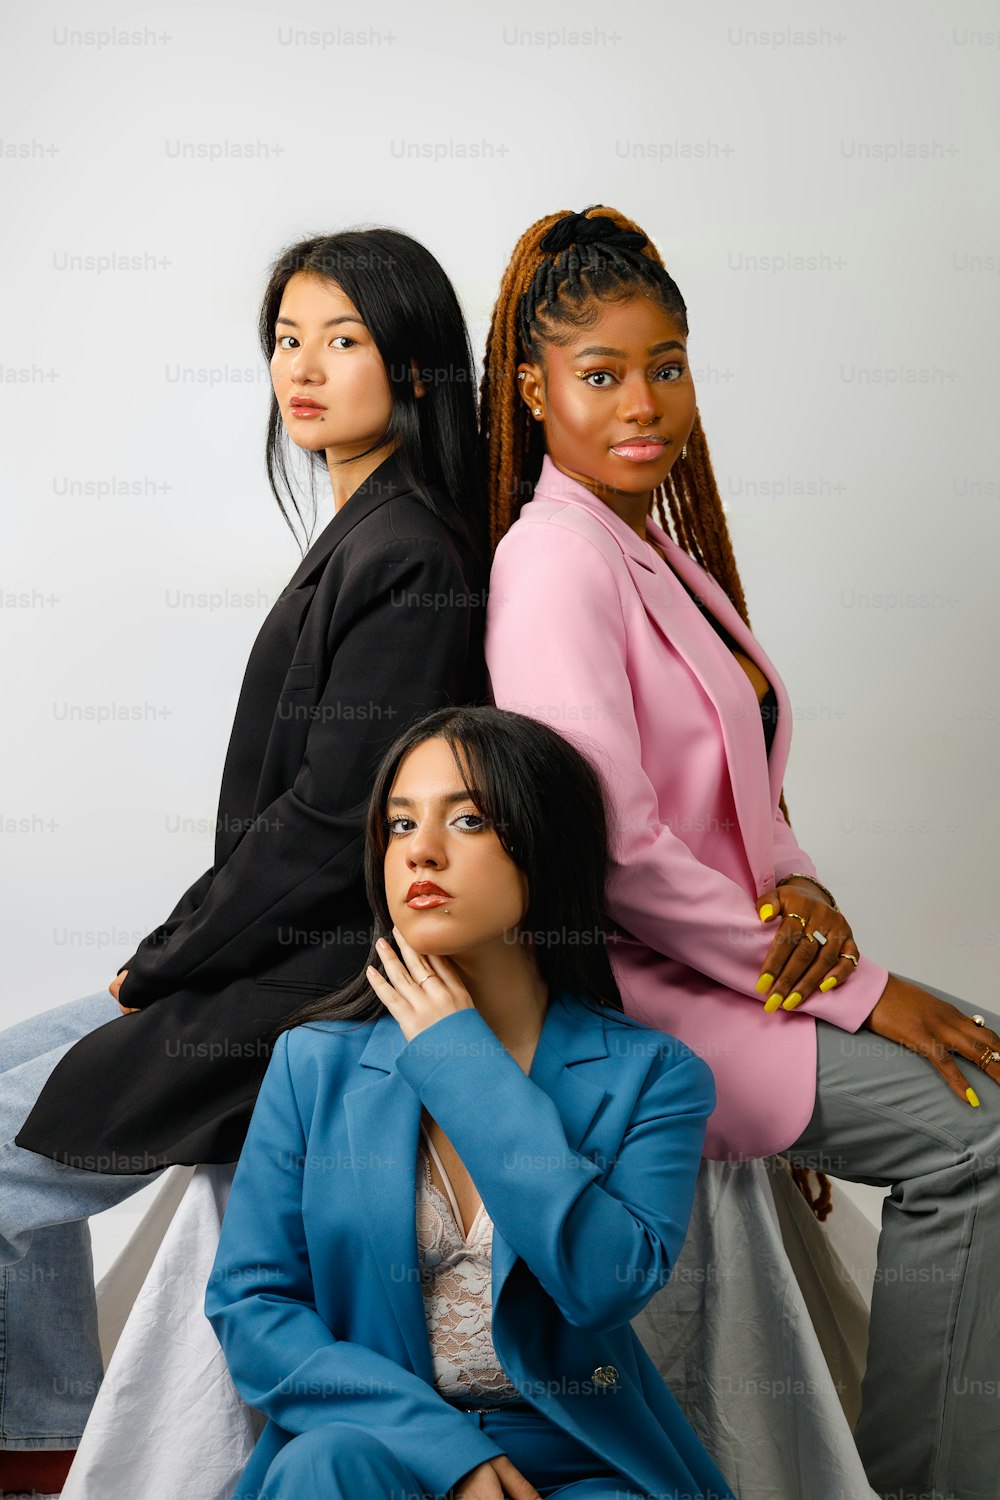 나란히 앉아 있는 세 명의 여성 그룹